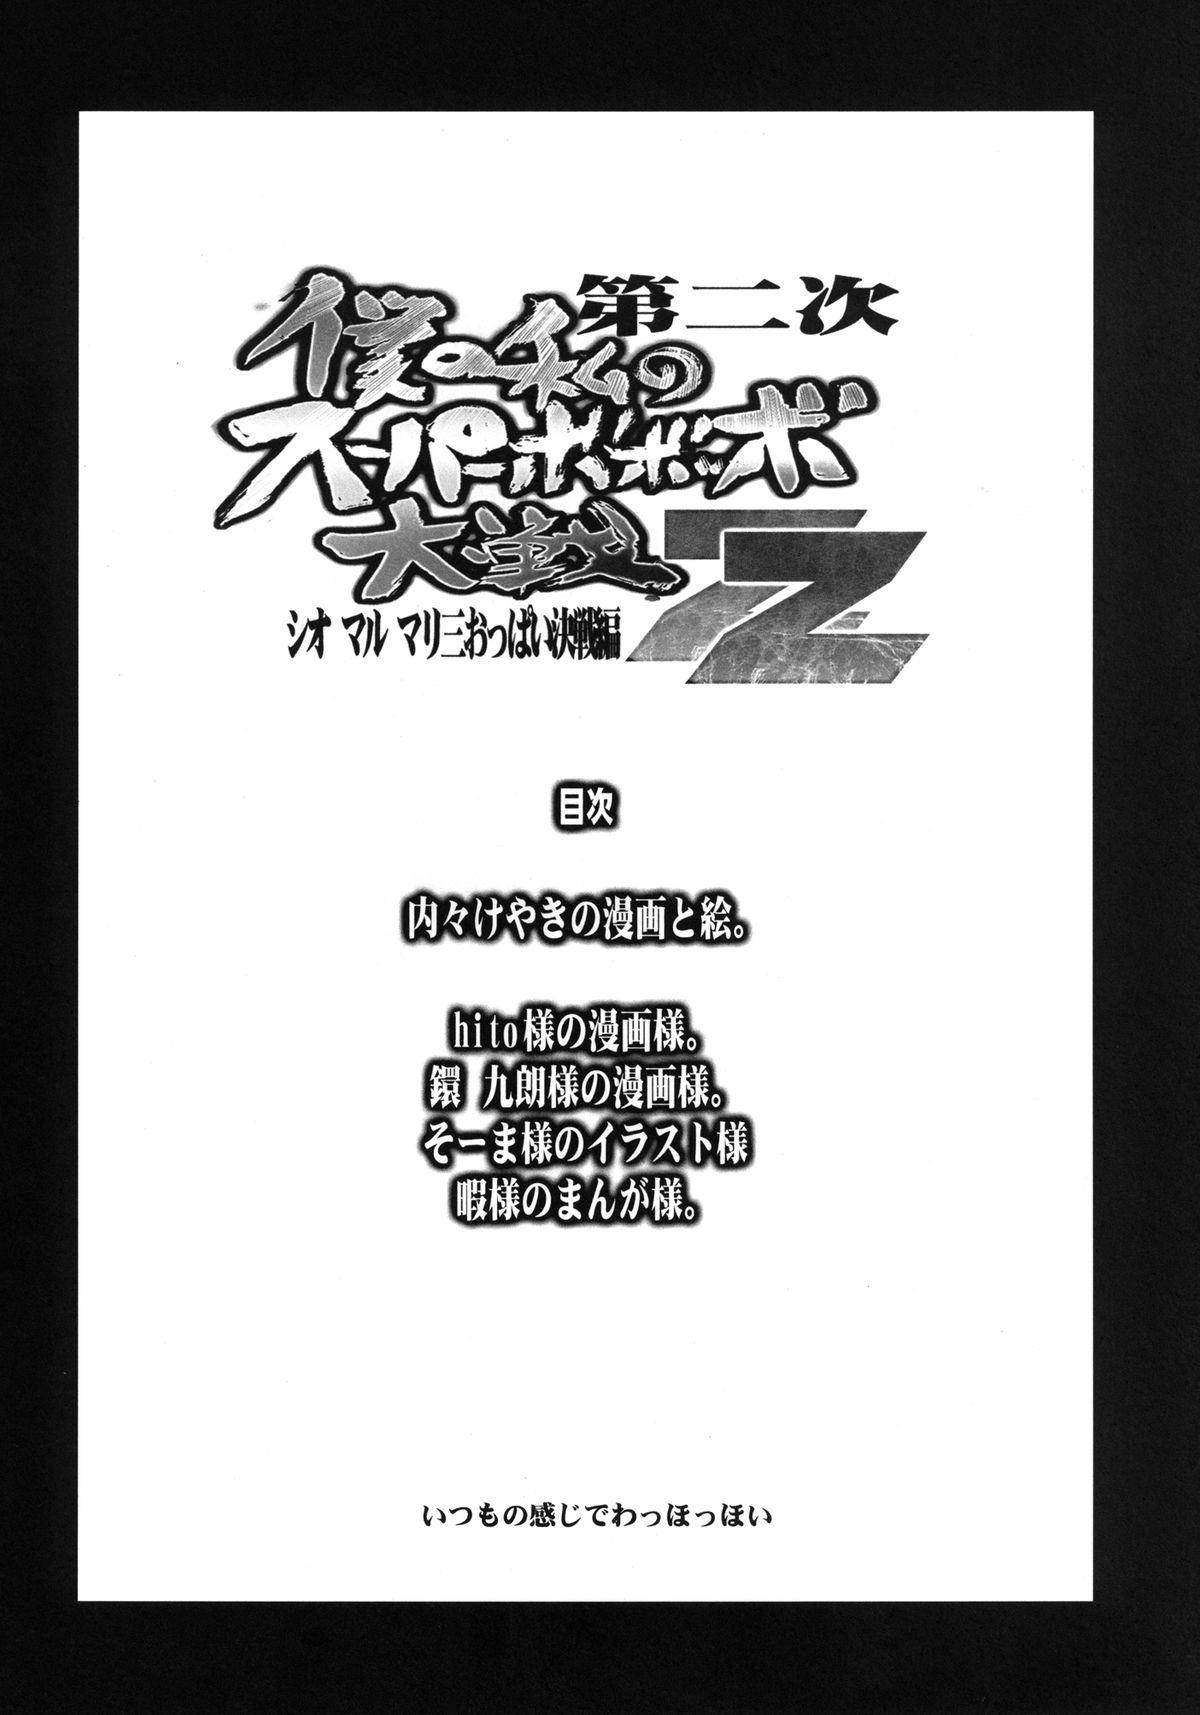 Best Blowjob Ever Dainiji Boku no Watashi no Super Bobobbo Taisen ZZ - Cio Mar Mari 3 Oppai Kessen hen - Super robot wars Viet Nam - Page 4